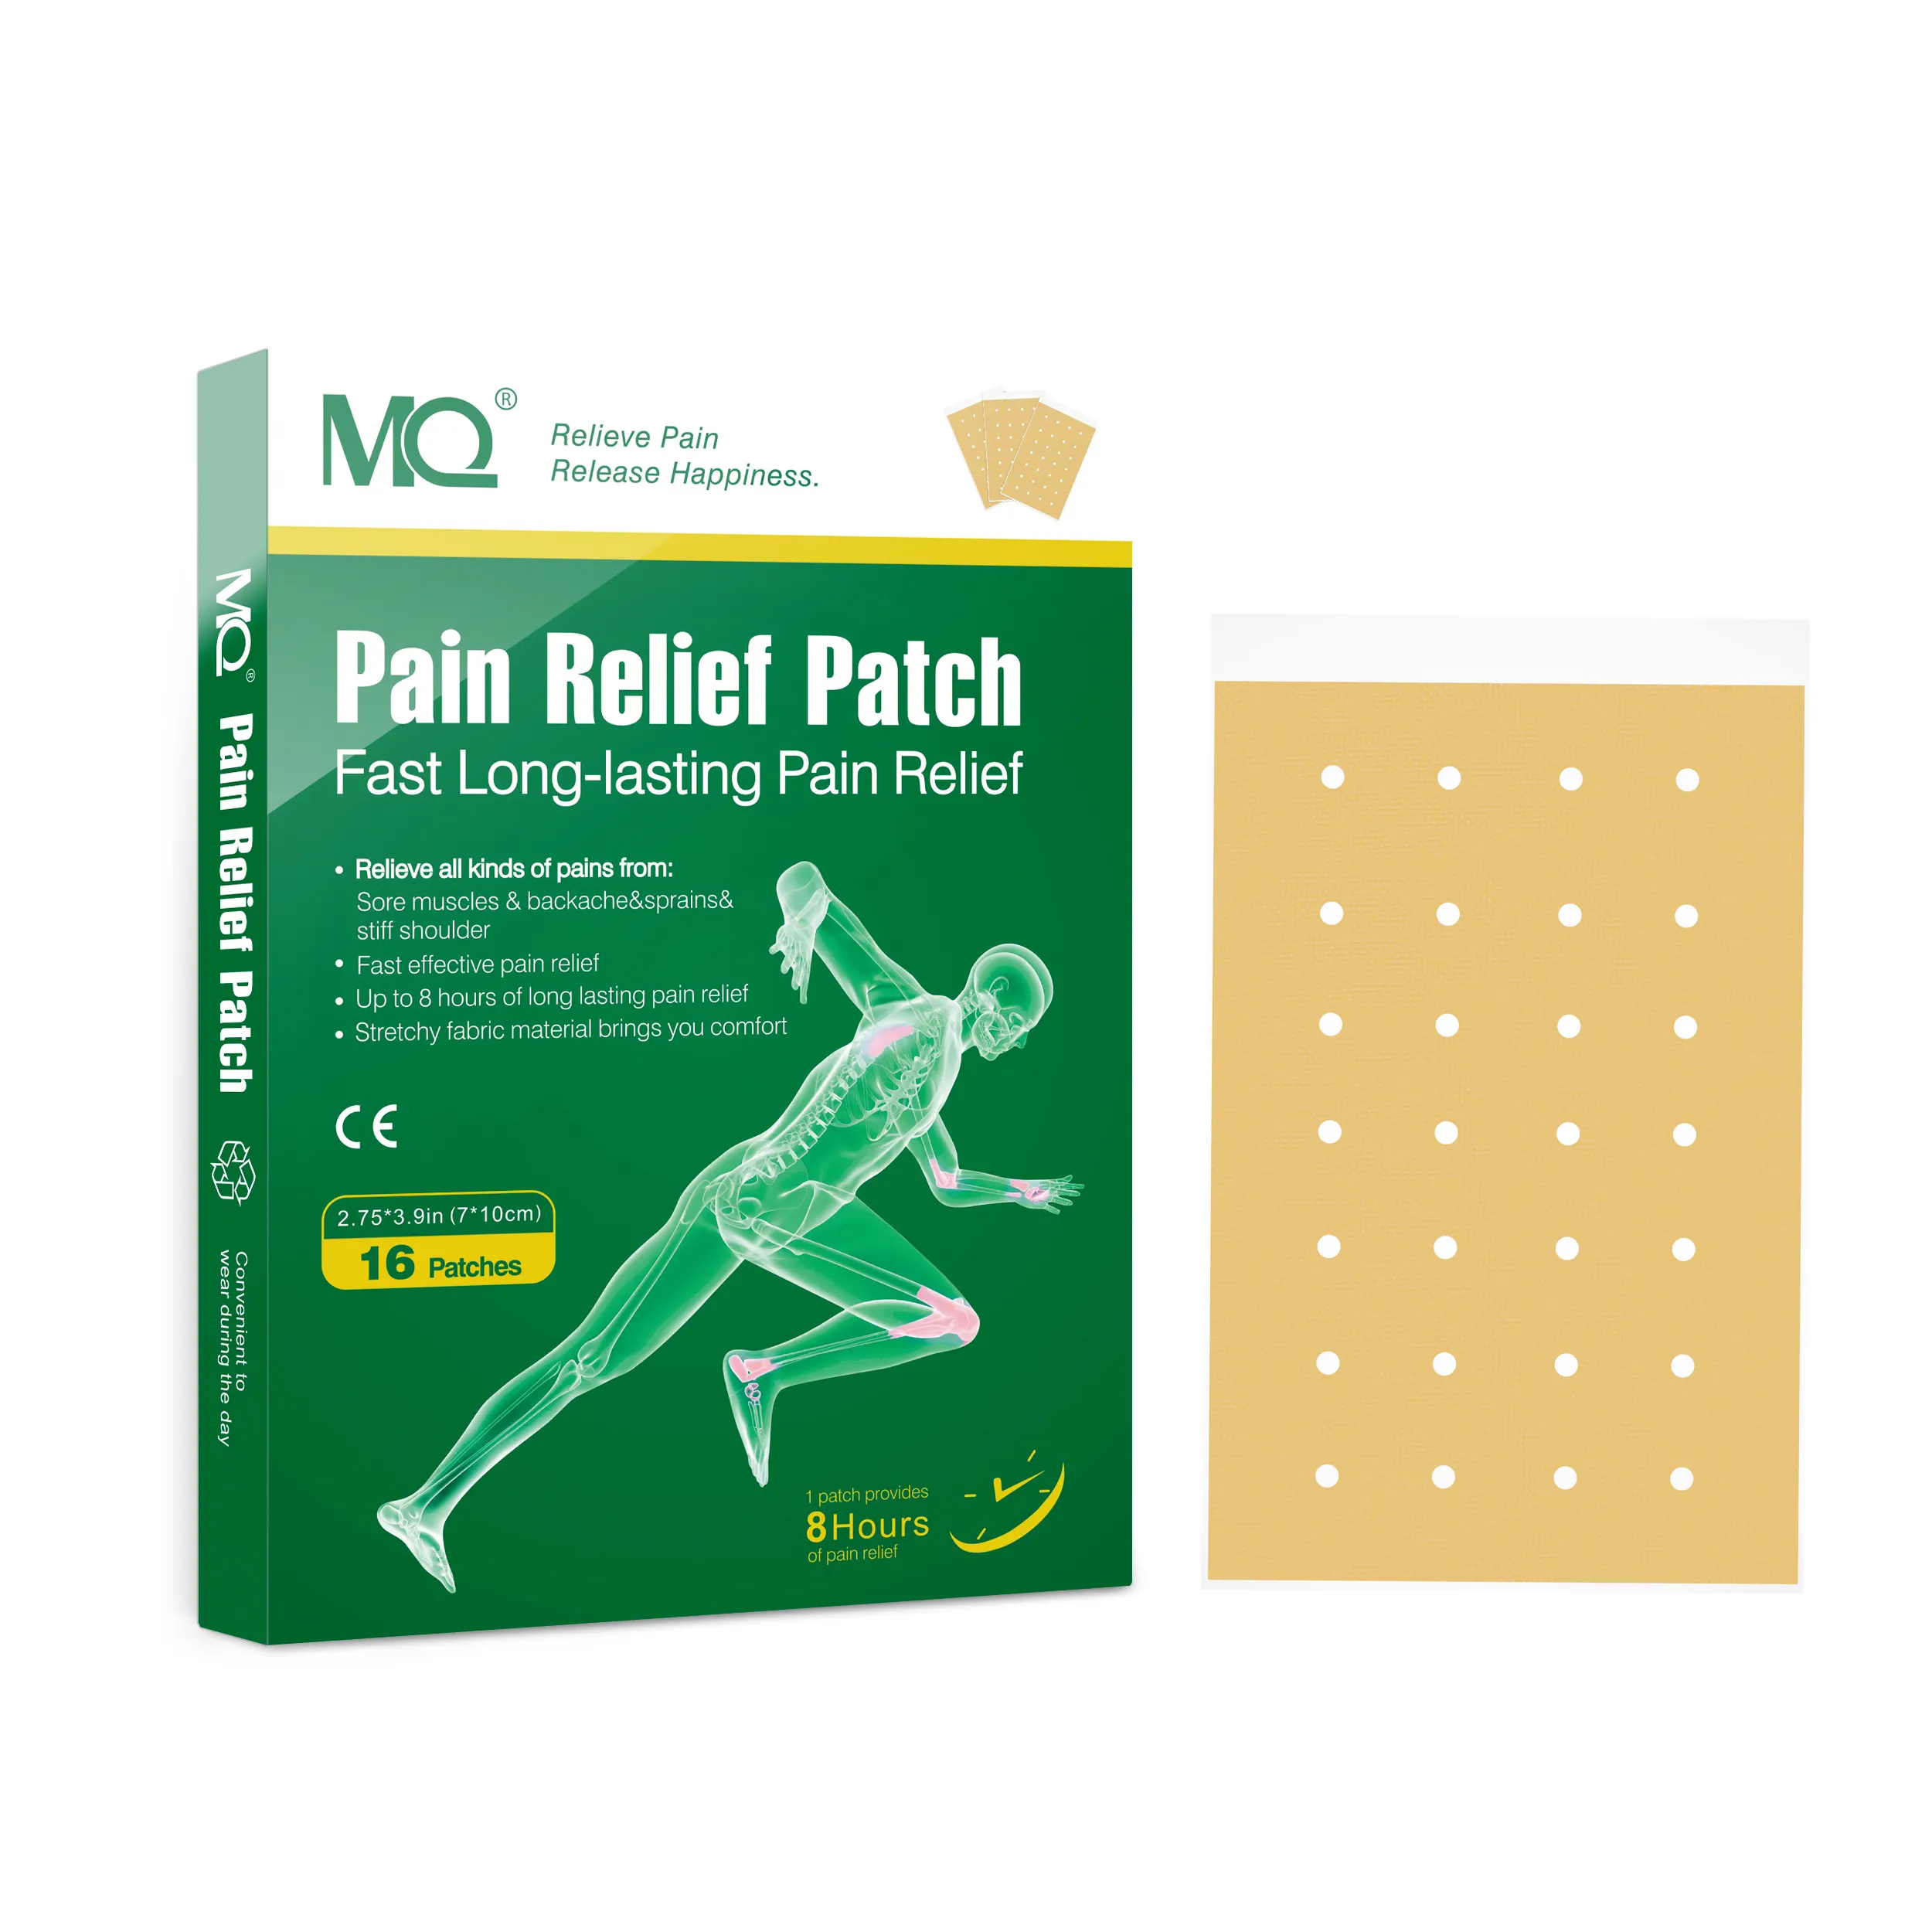 पीठ दर्द की मांसपेशियों को कम करना तेज और प्रभावी लगातार 8 घंटे दर्द राहत पैच